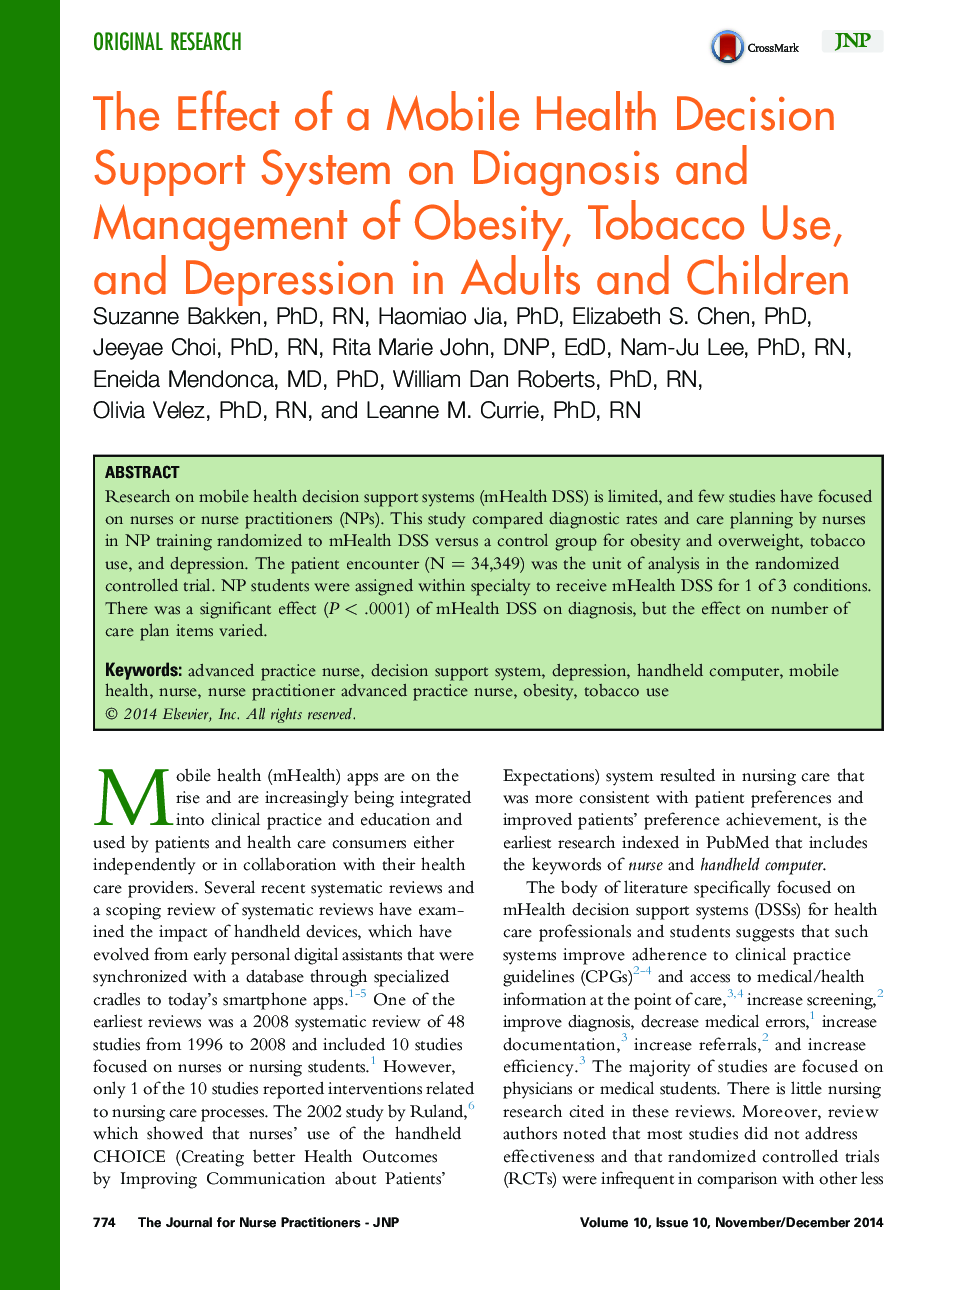 تأثیر یک سیستم پشتیبانی تصمیم گیری سلامت موبایل بر تشخیص و مدیریت چاقی، مصرف دخانیات و افسردگی در بزرگسالان و کودکان 